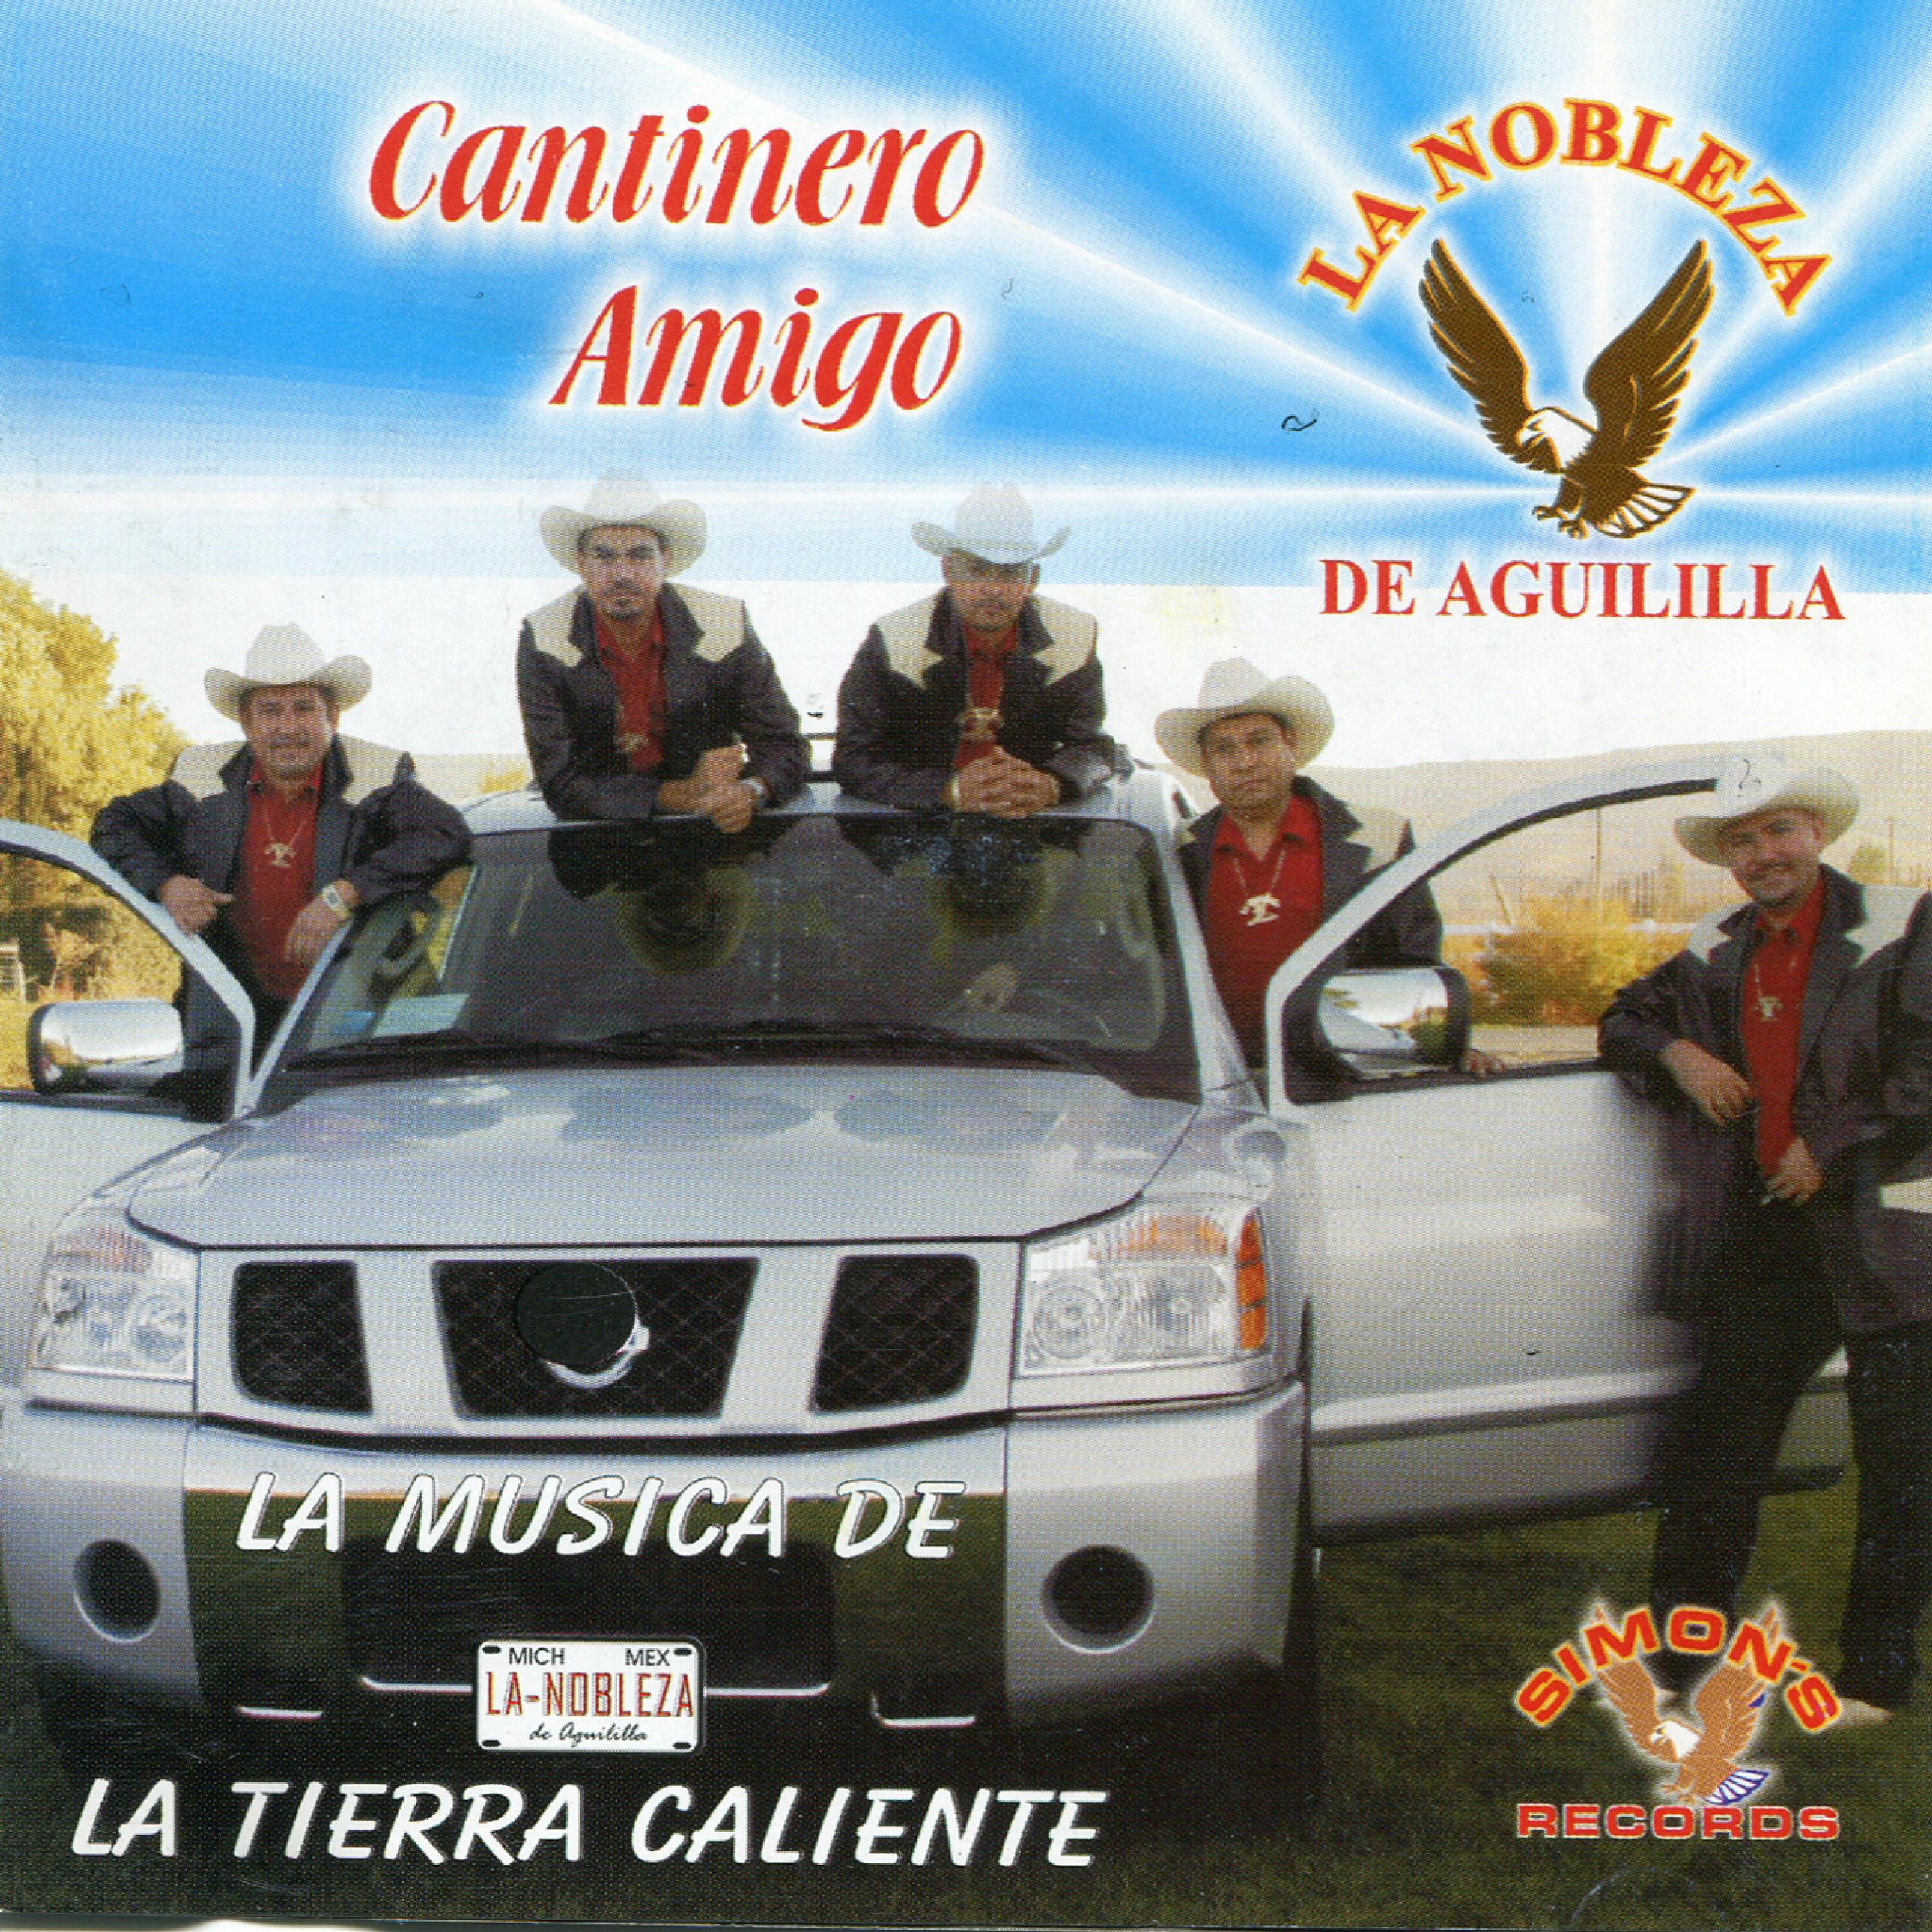 La Nobleza de Aguililla - Cantinero Amigo